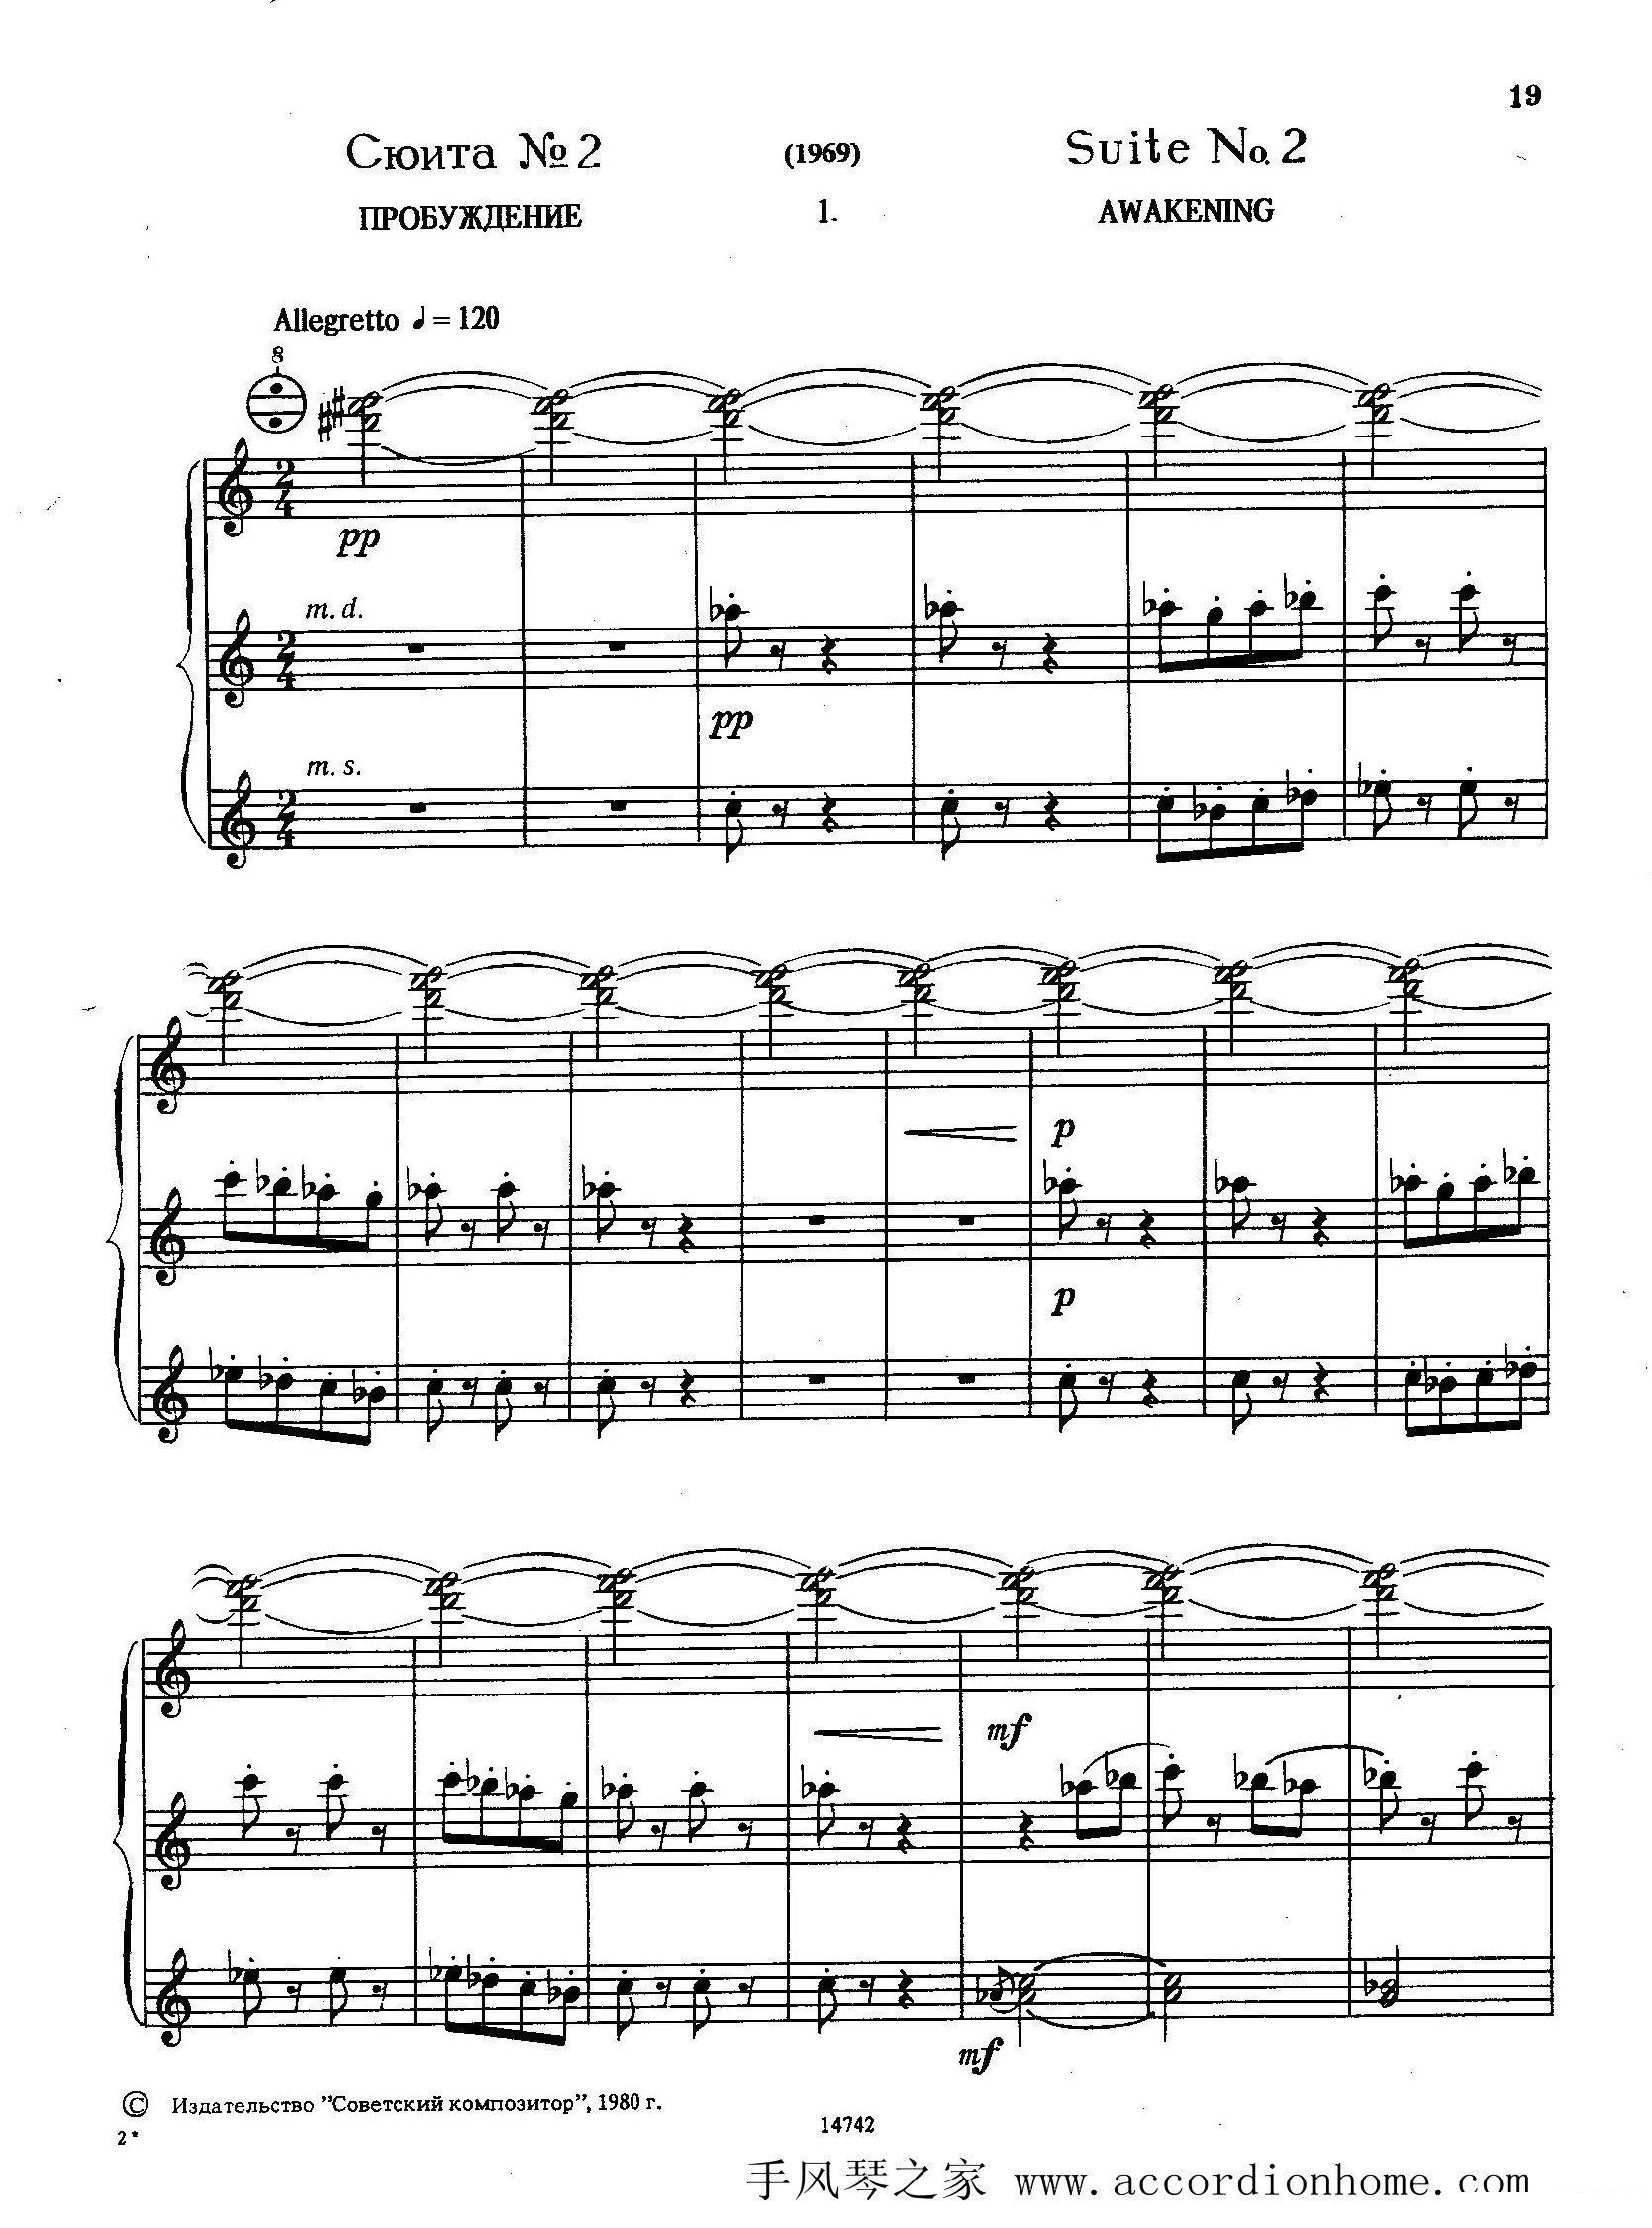 手风琴乐谱琴谱 佐罗塔耶夫-六首儿童组曲之二